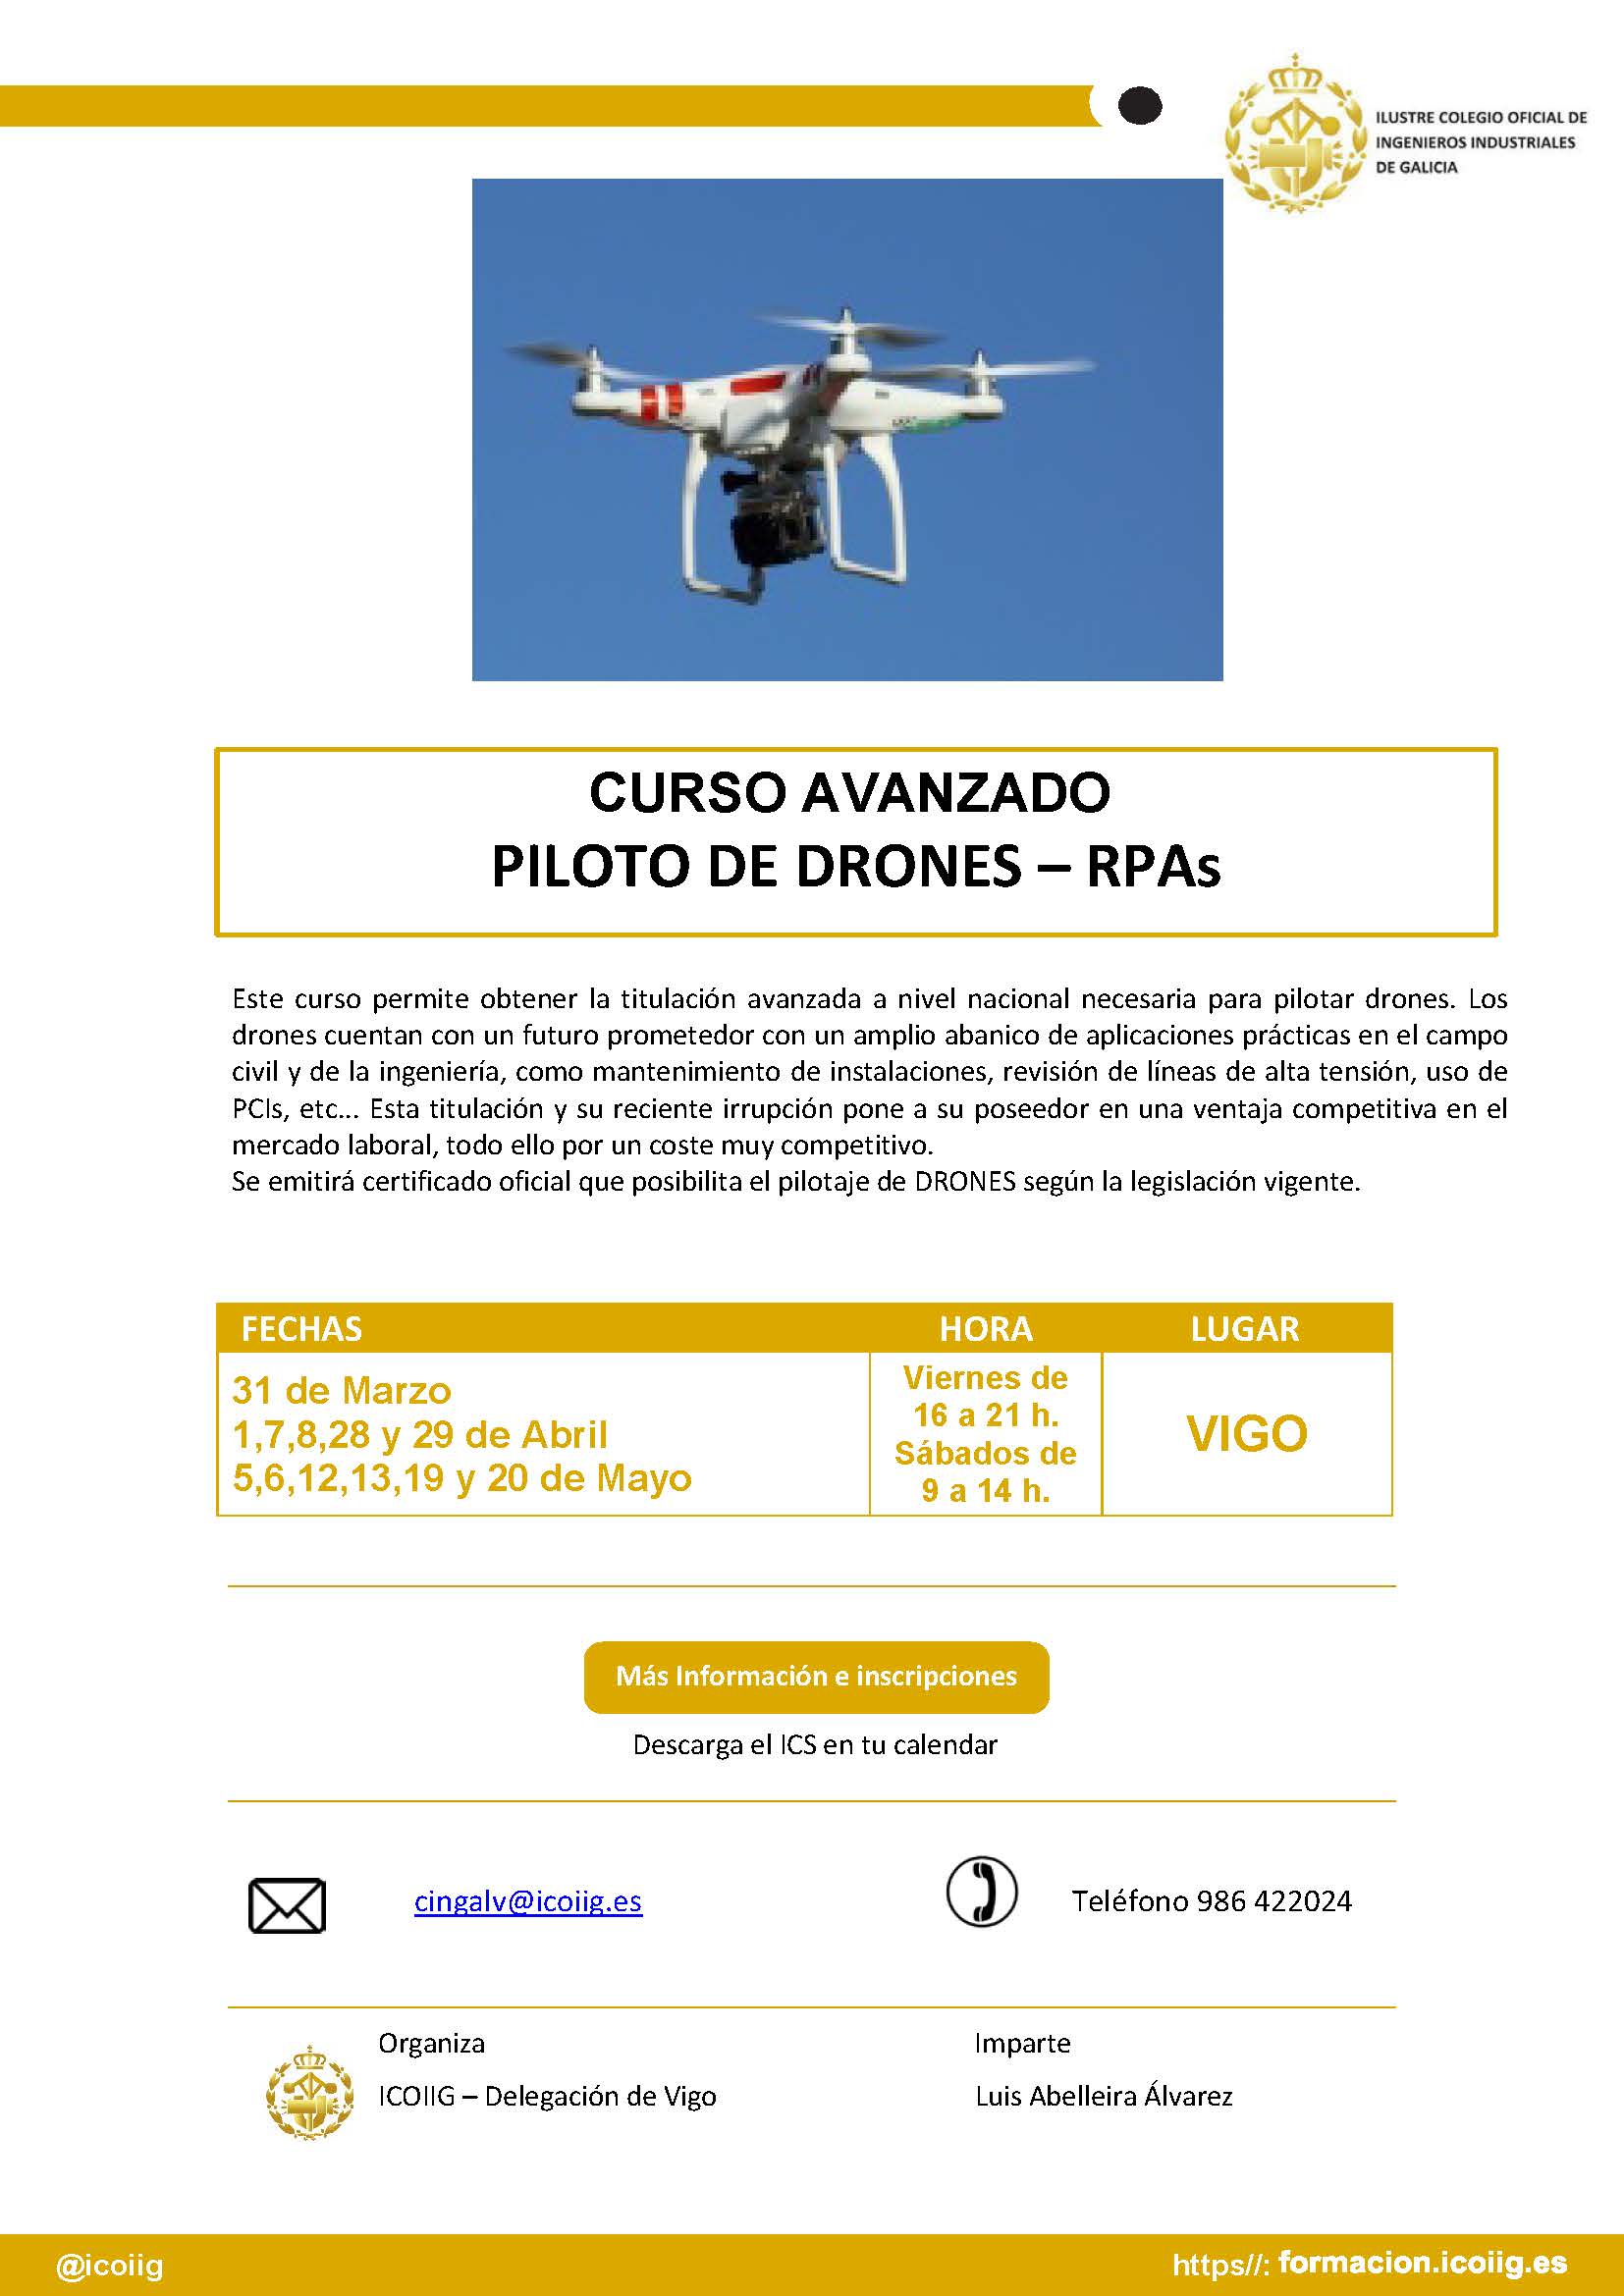 Curso Avanzado Piloto de Drones - RPAs